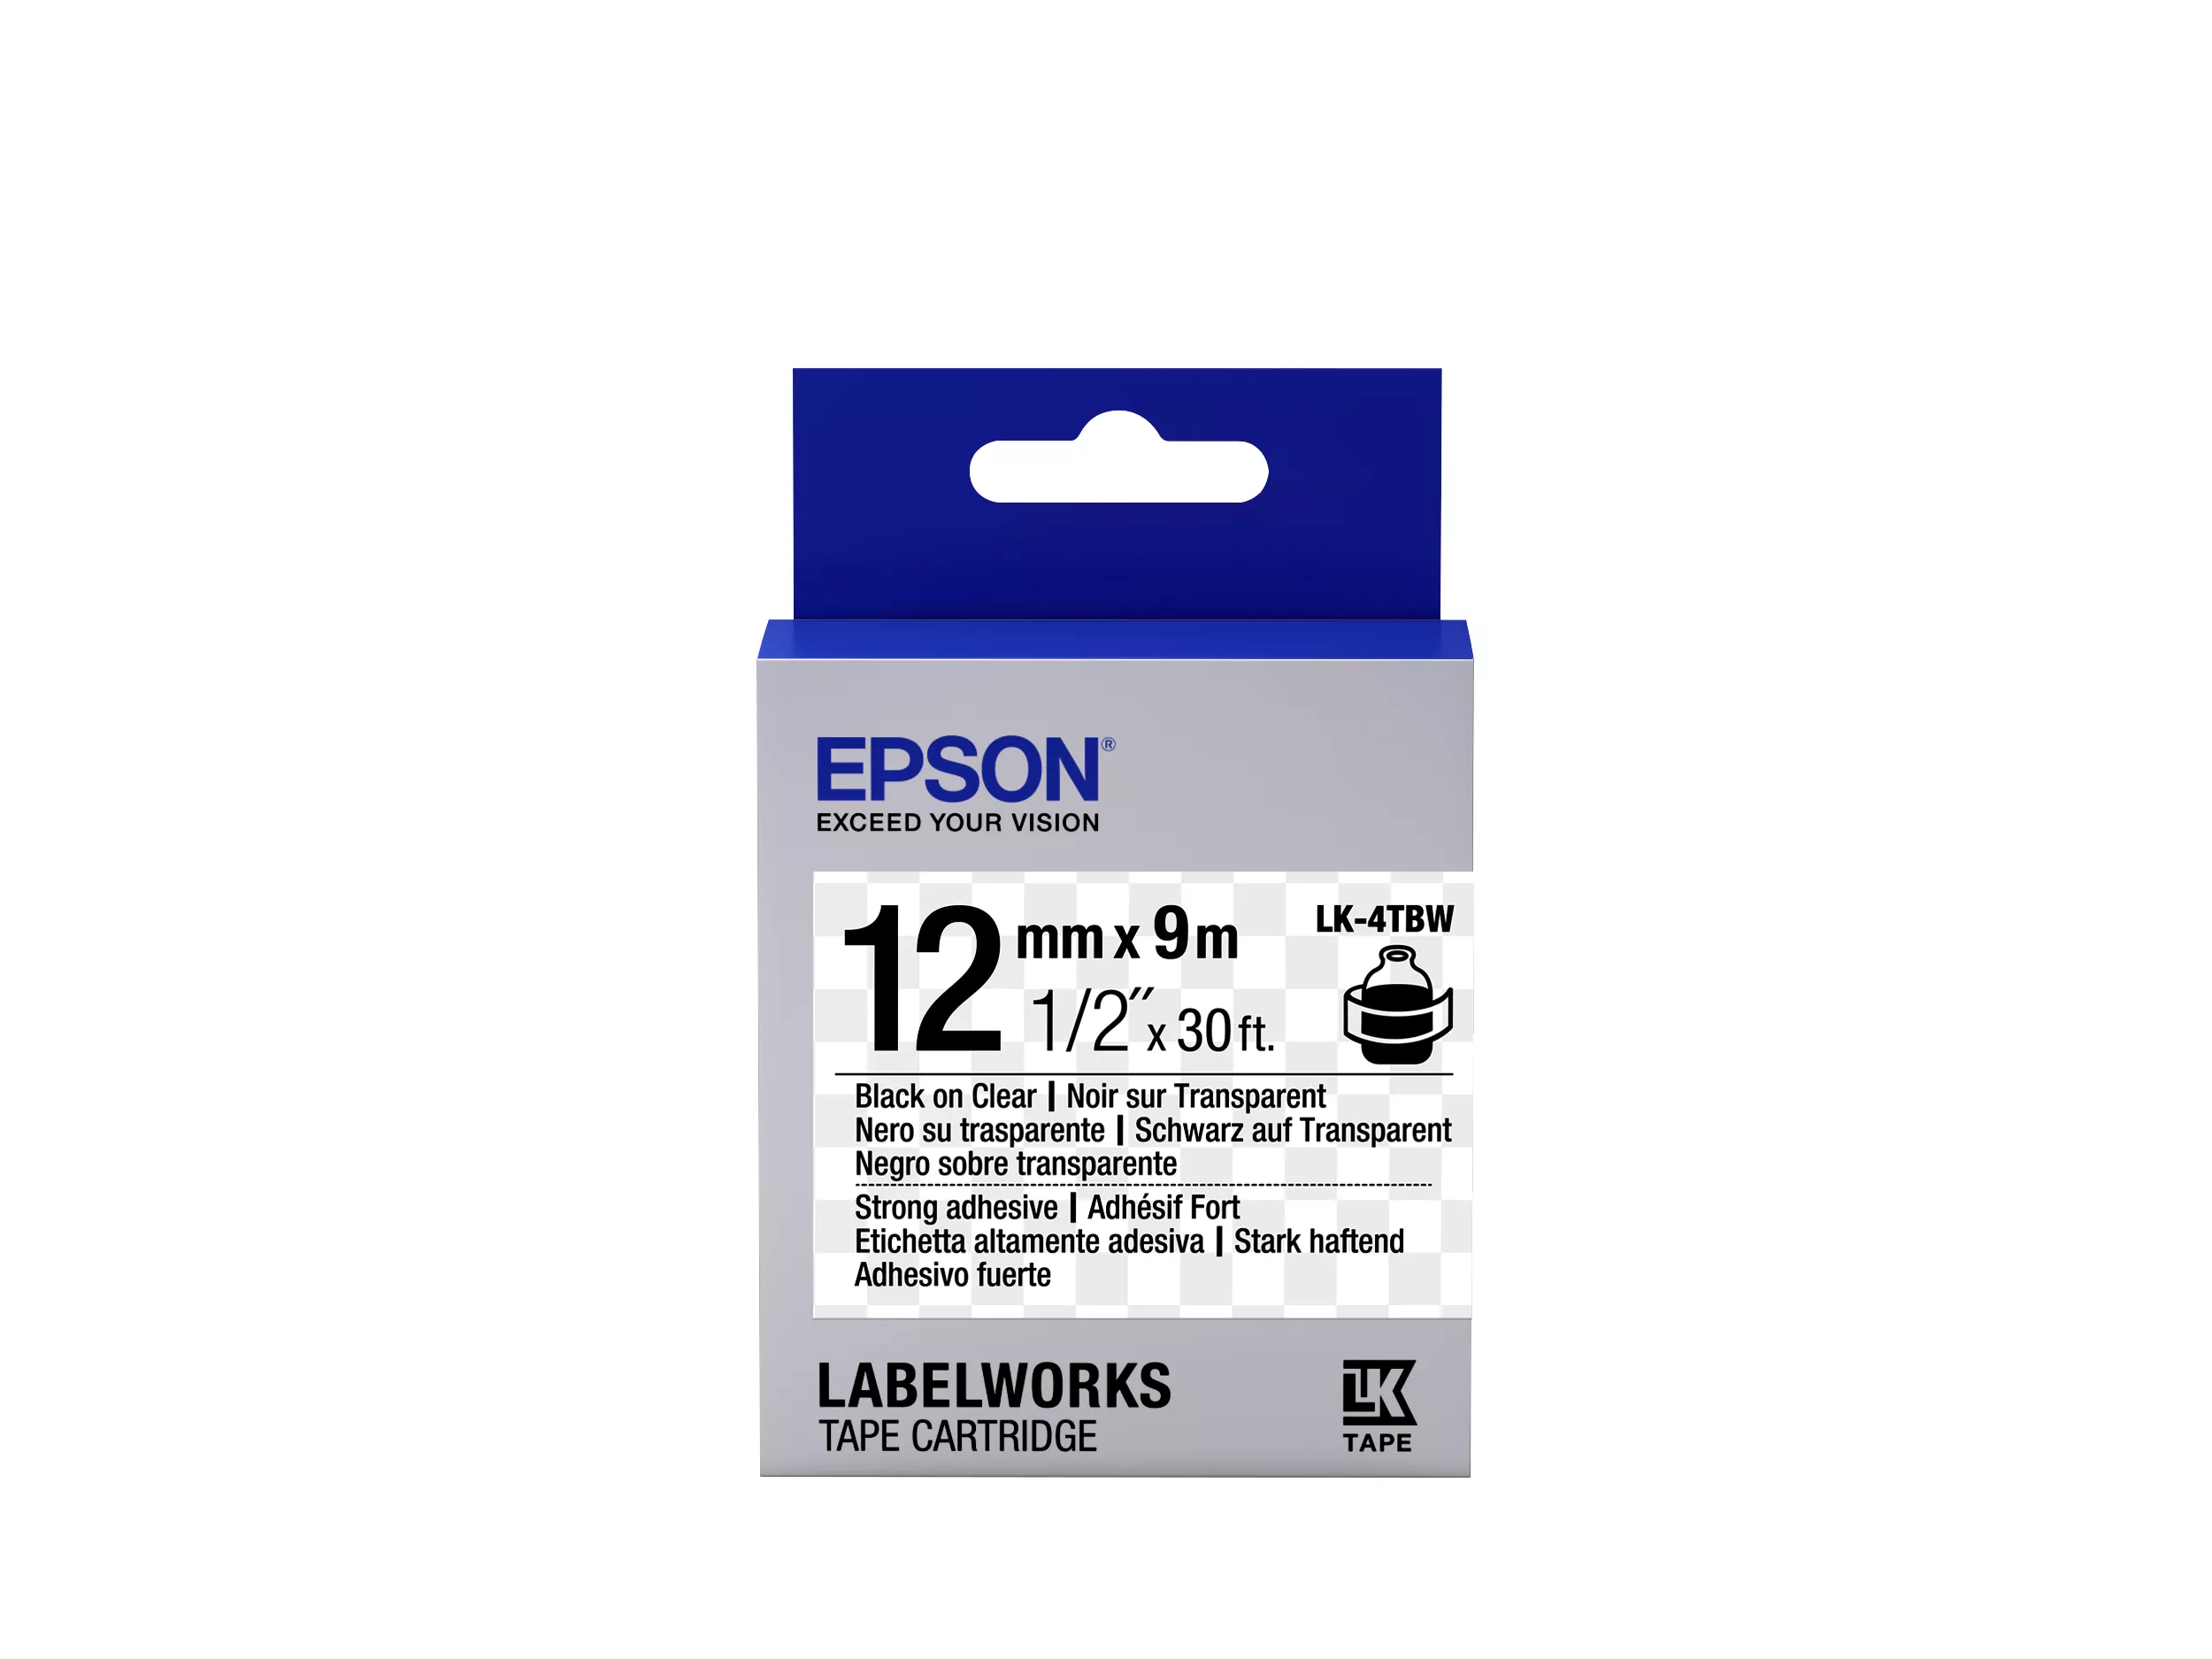 Achat Epson LK-4TBW - Adhésif Fort - Noir sur Transparent et autres produits de la marque Epson